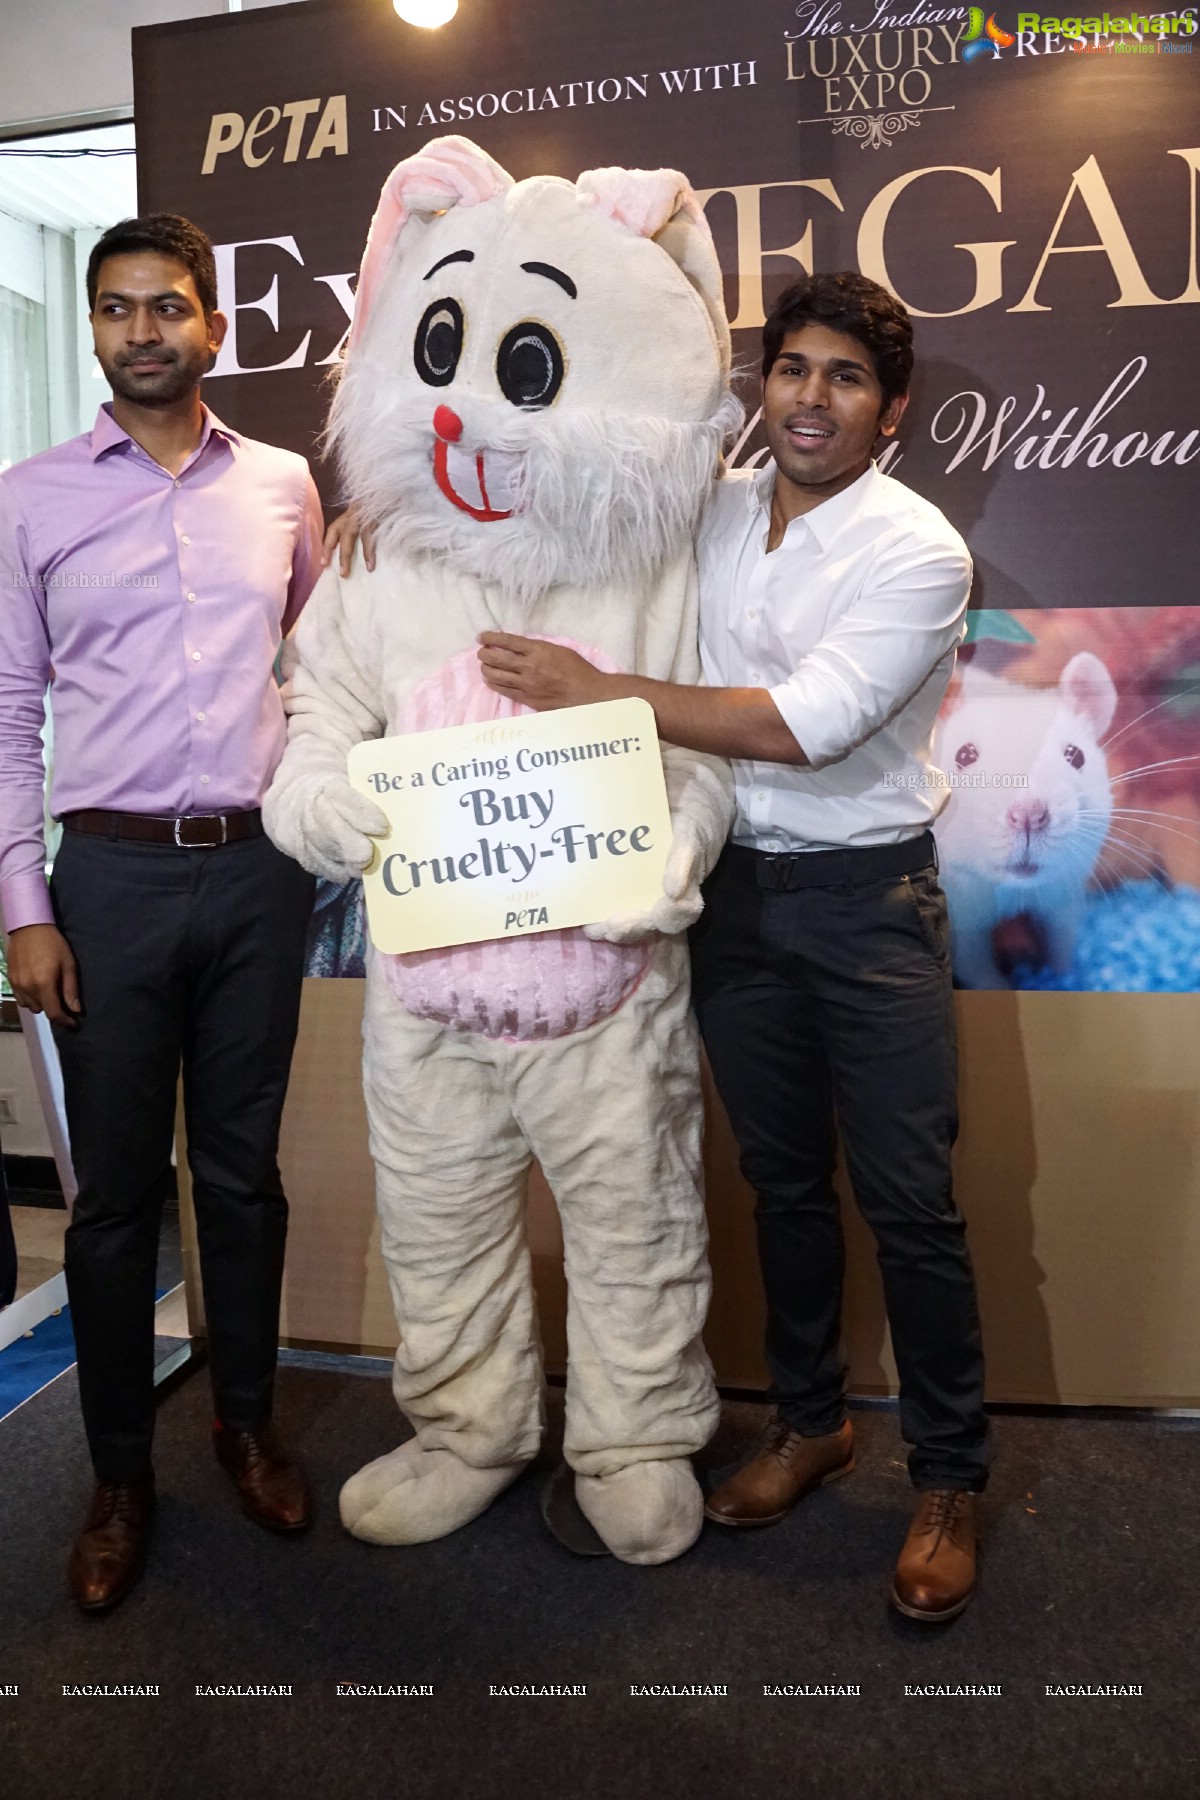 Allu Sirish poses with Bunny Mascot at PETA Stall, Hyderabad